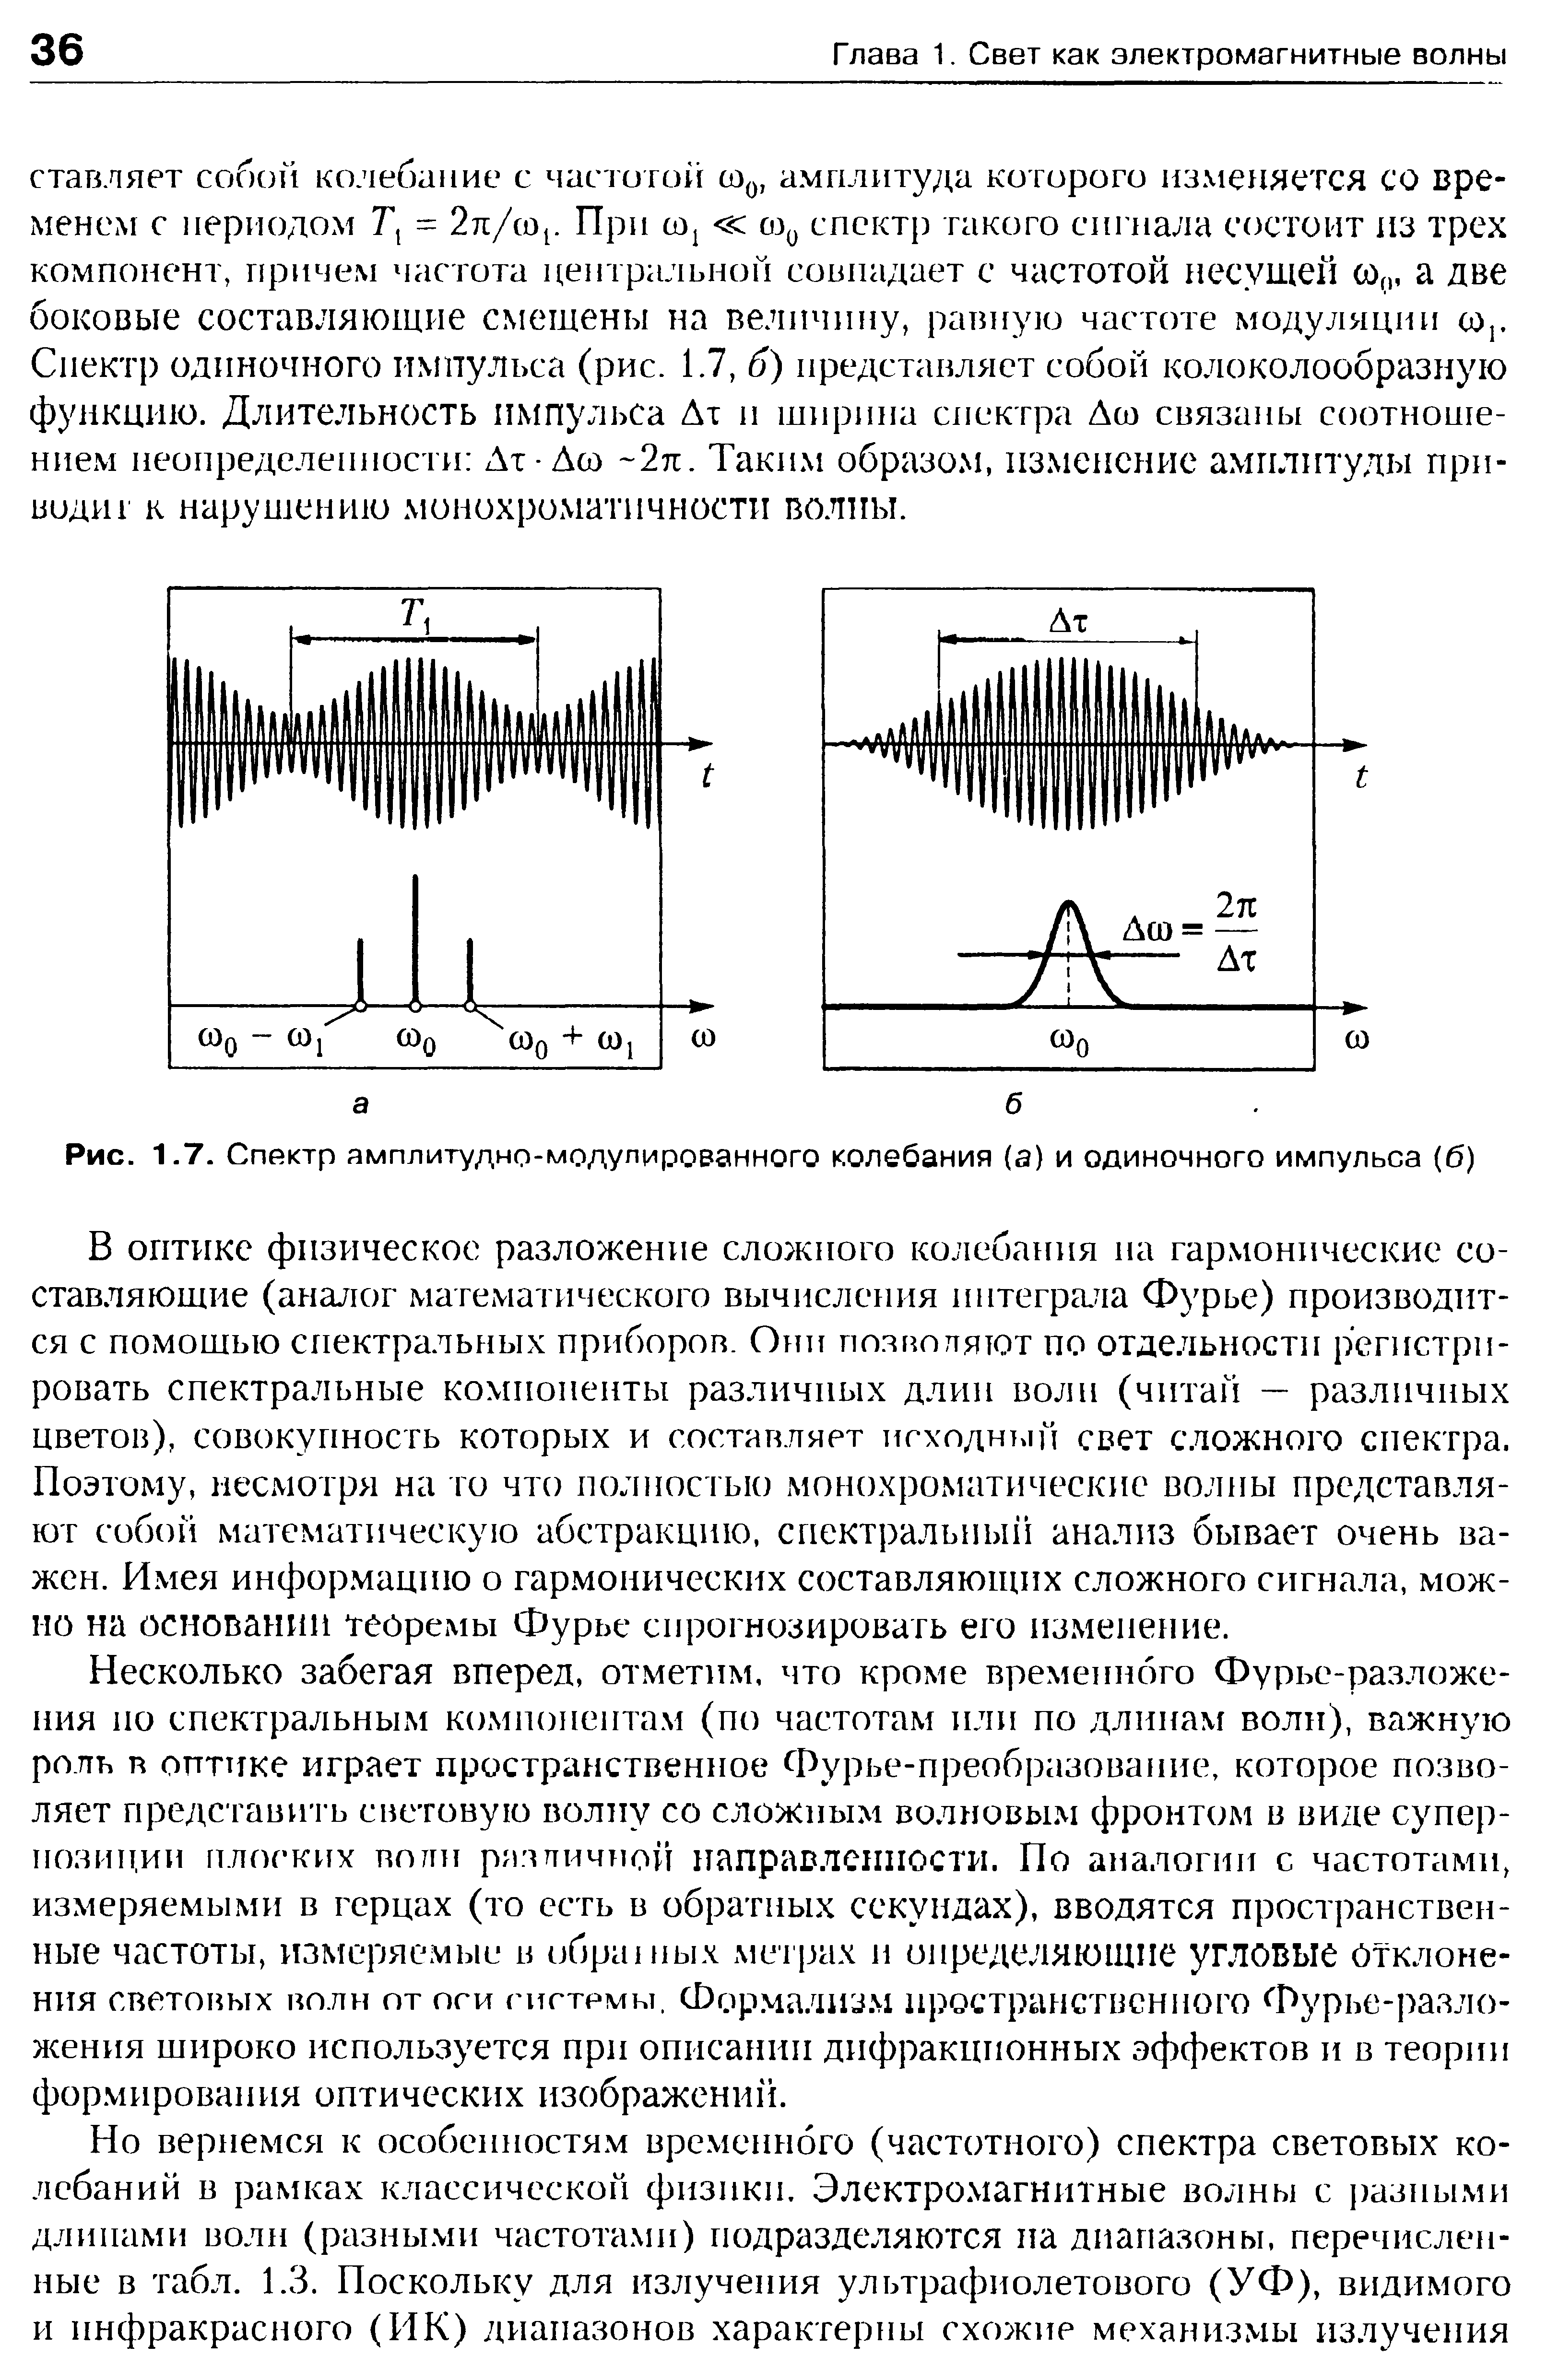 Рис. 1.7. Спектр амплитудно-модулированного колебания (а) и одиночного импульса (б)
